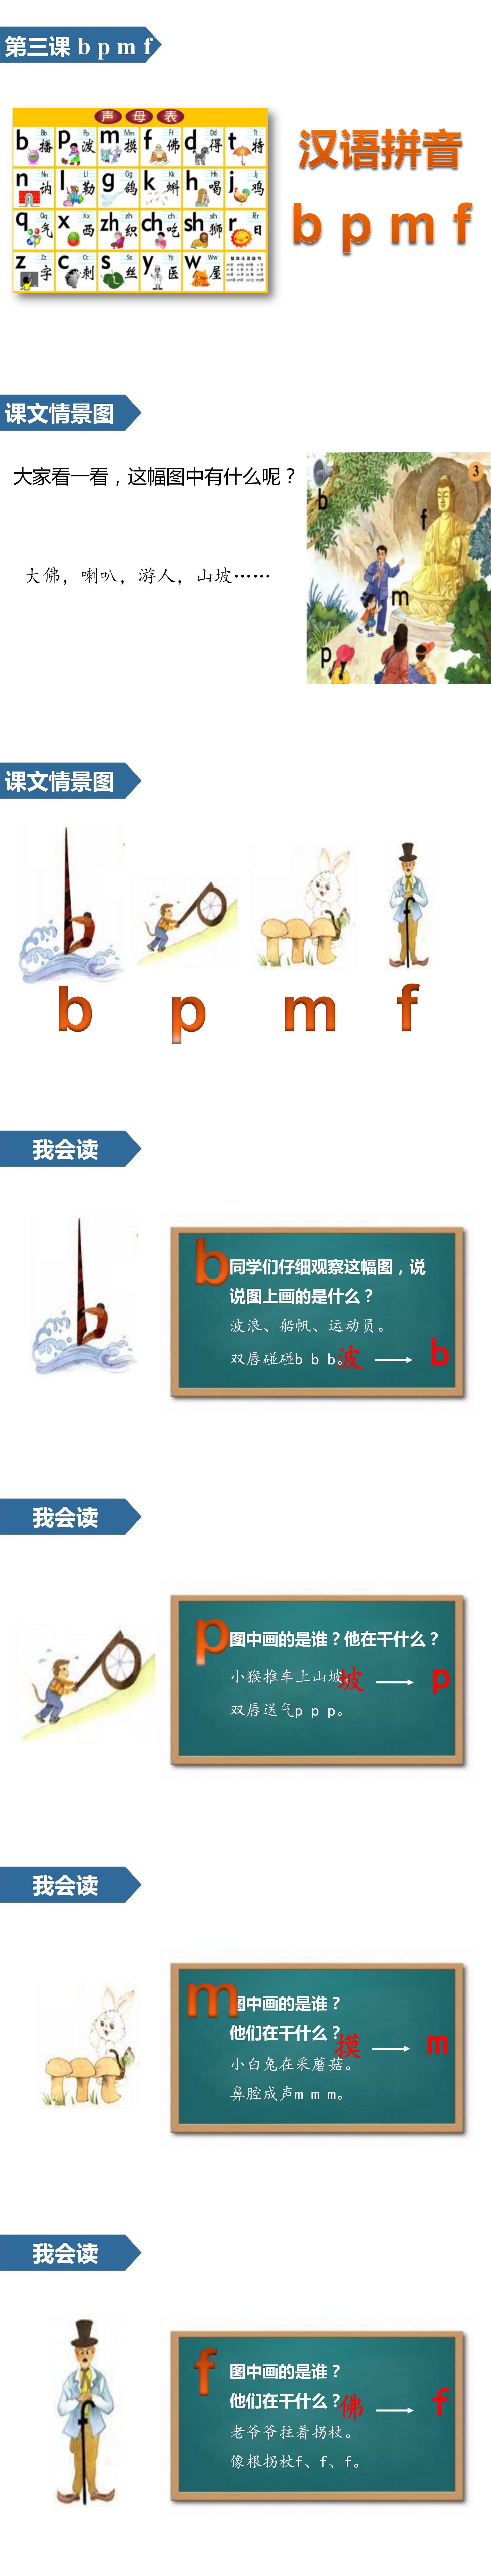 小学语文课件《bpmf》汉语拼音PPT模板